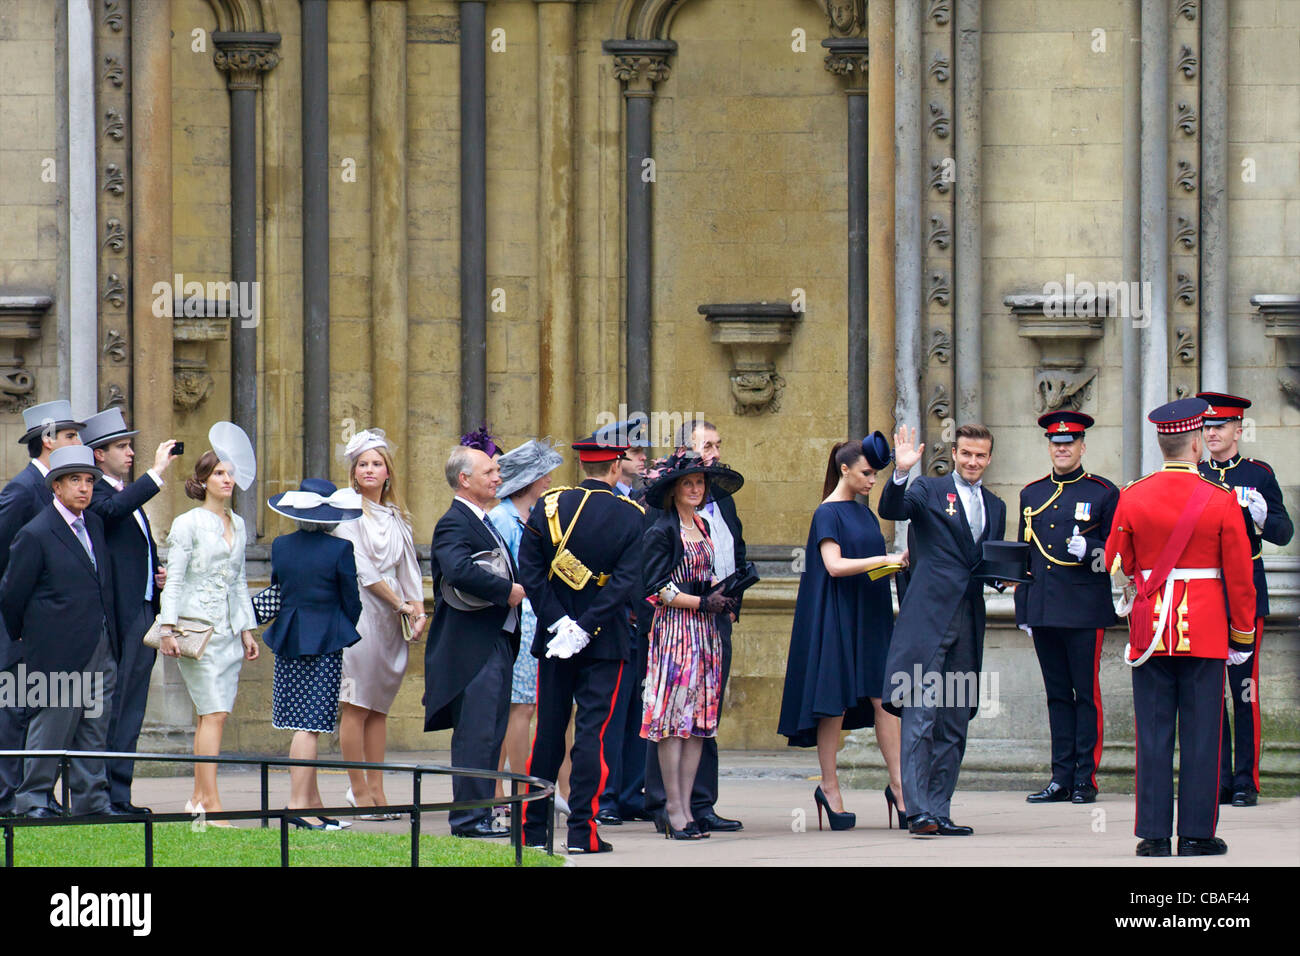 David et Victoria Beckham arrivant en dehors de l'abbaye de Westminster pour le mariage du Prince William à Kate Middleton Banque D'Images